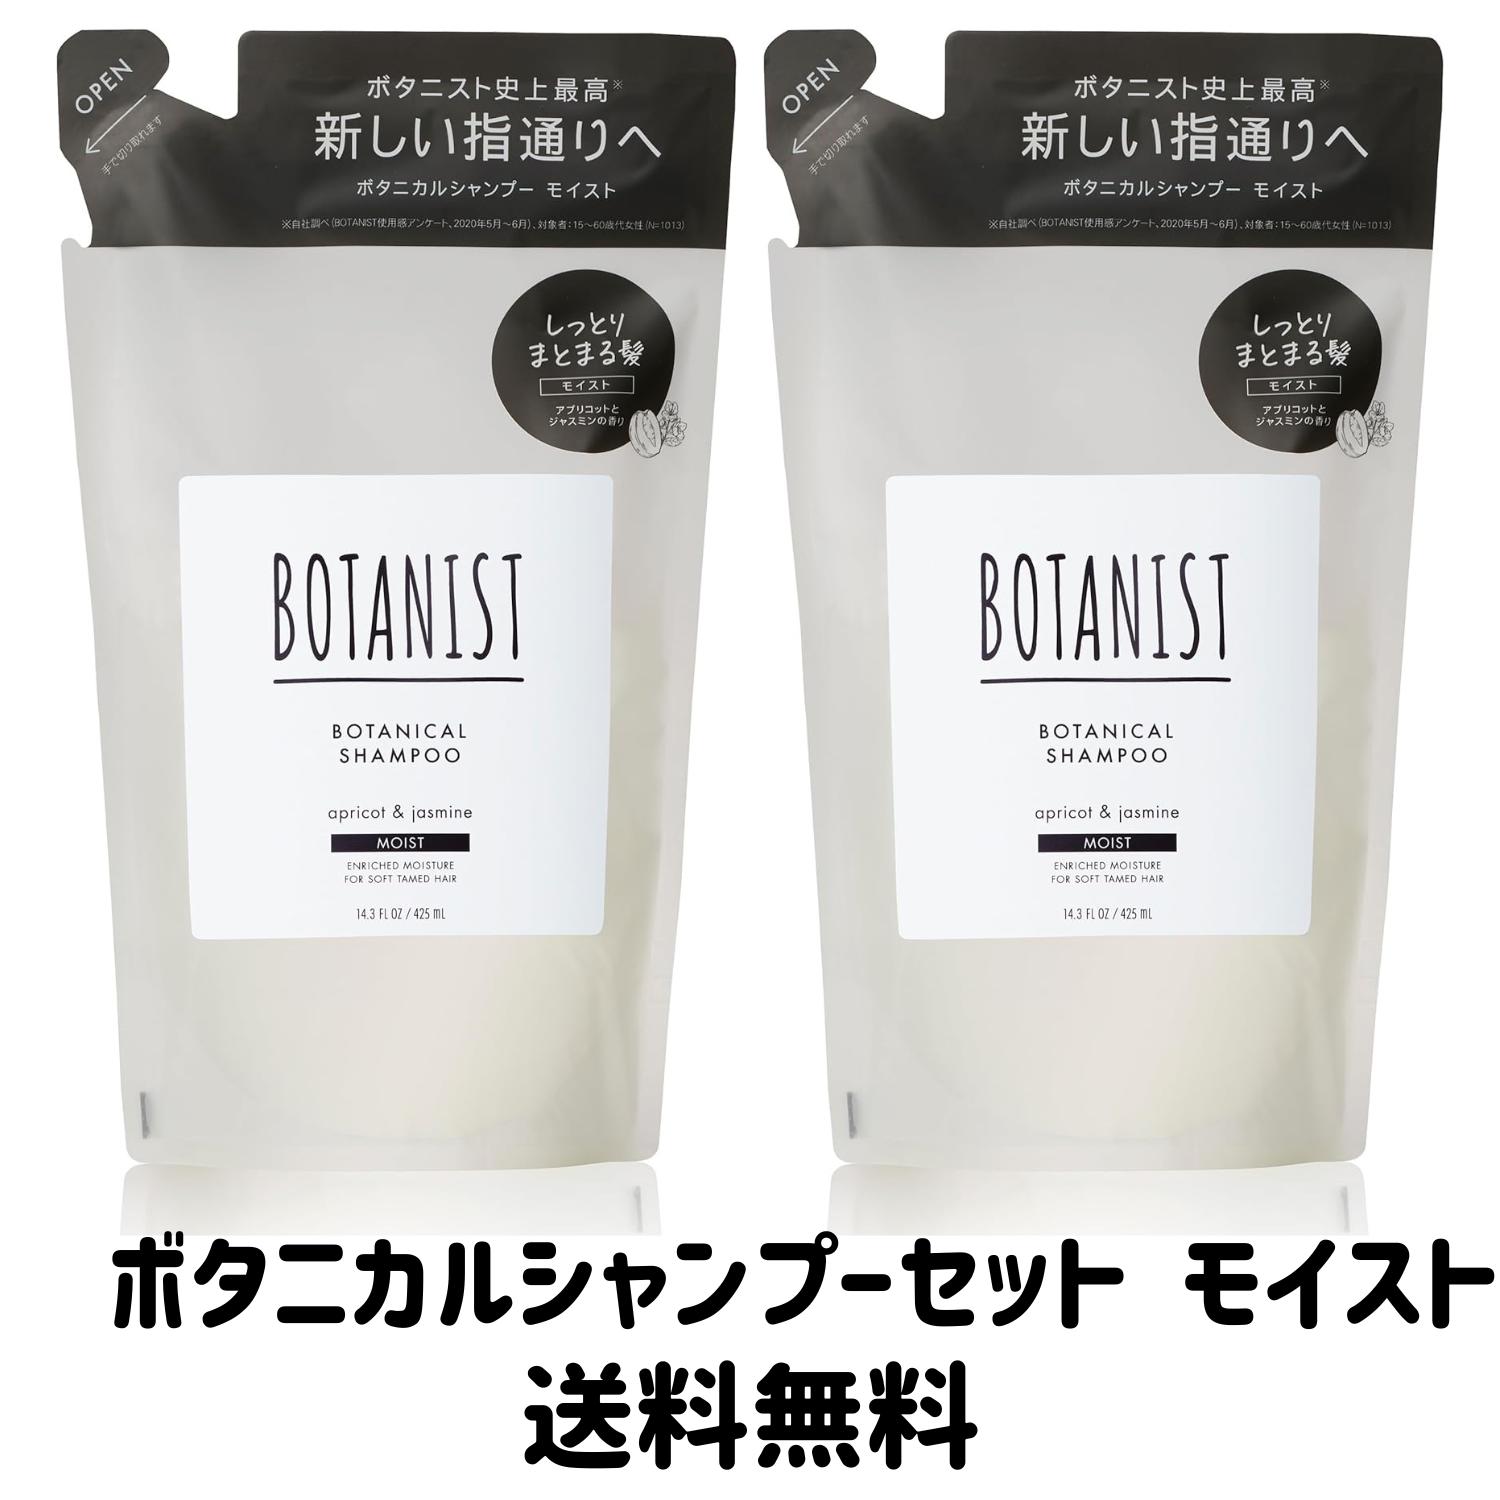 【ゲリラ特価セール】BOTANIST(ボタニスト...の商品画像